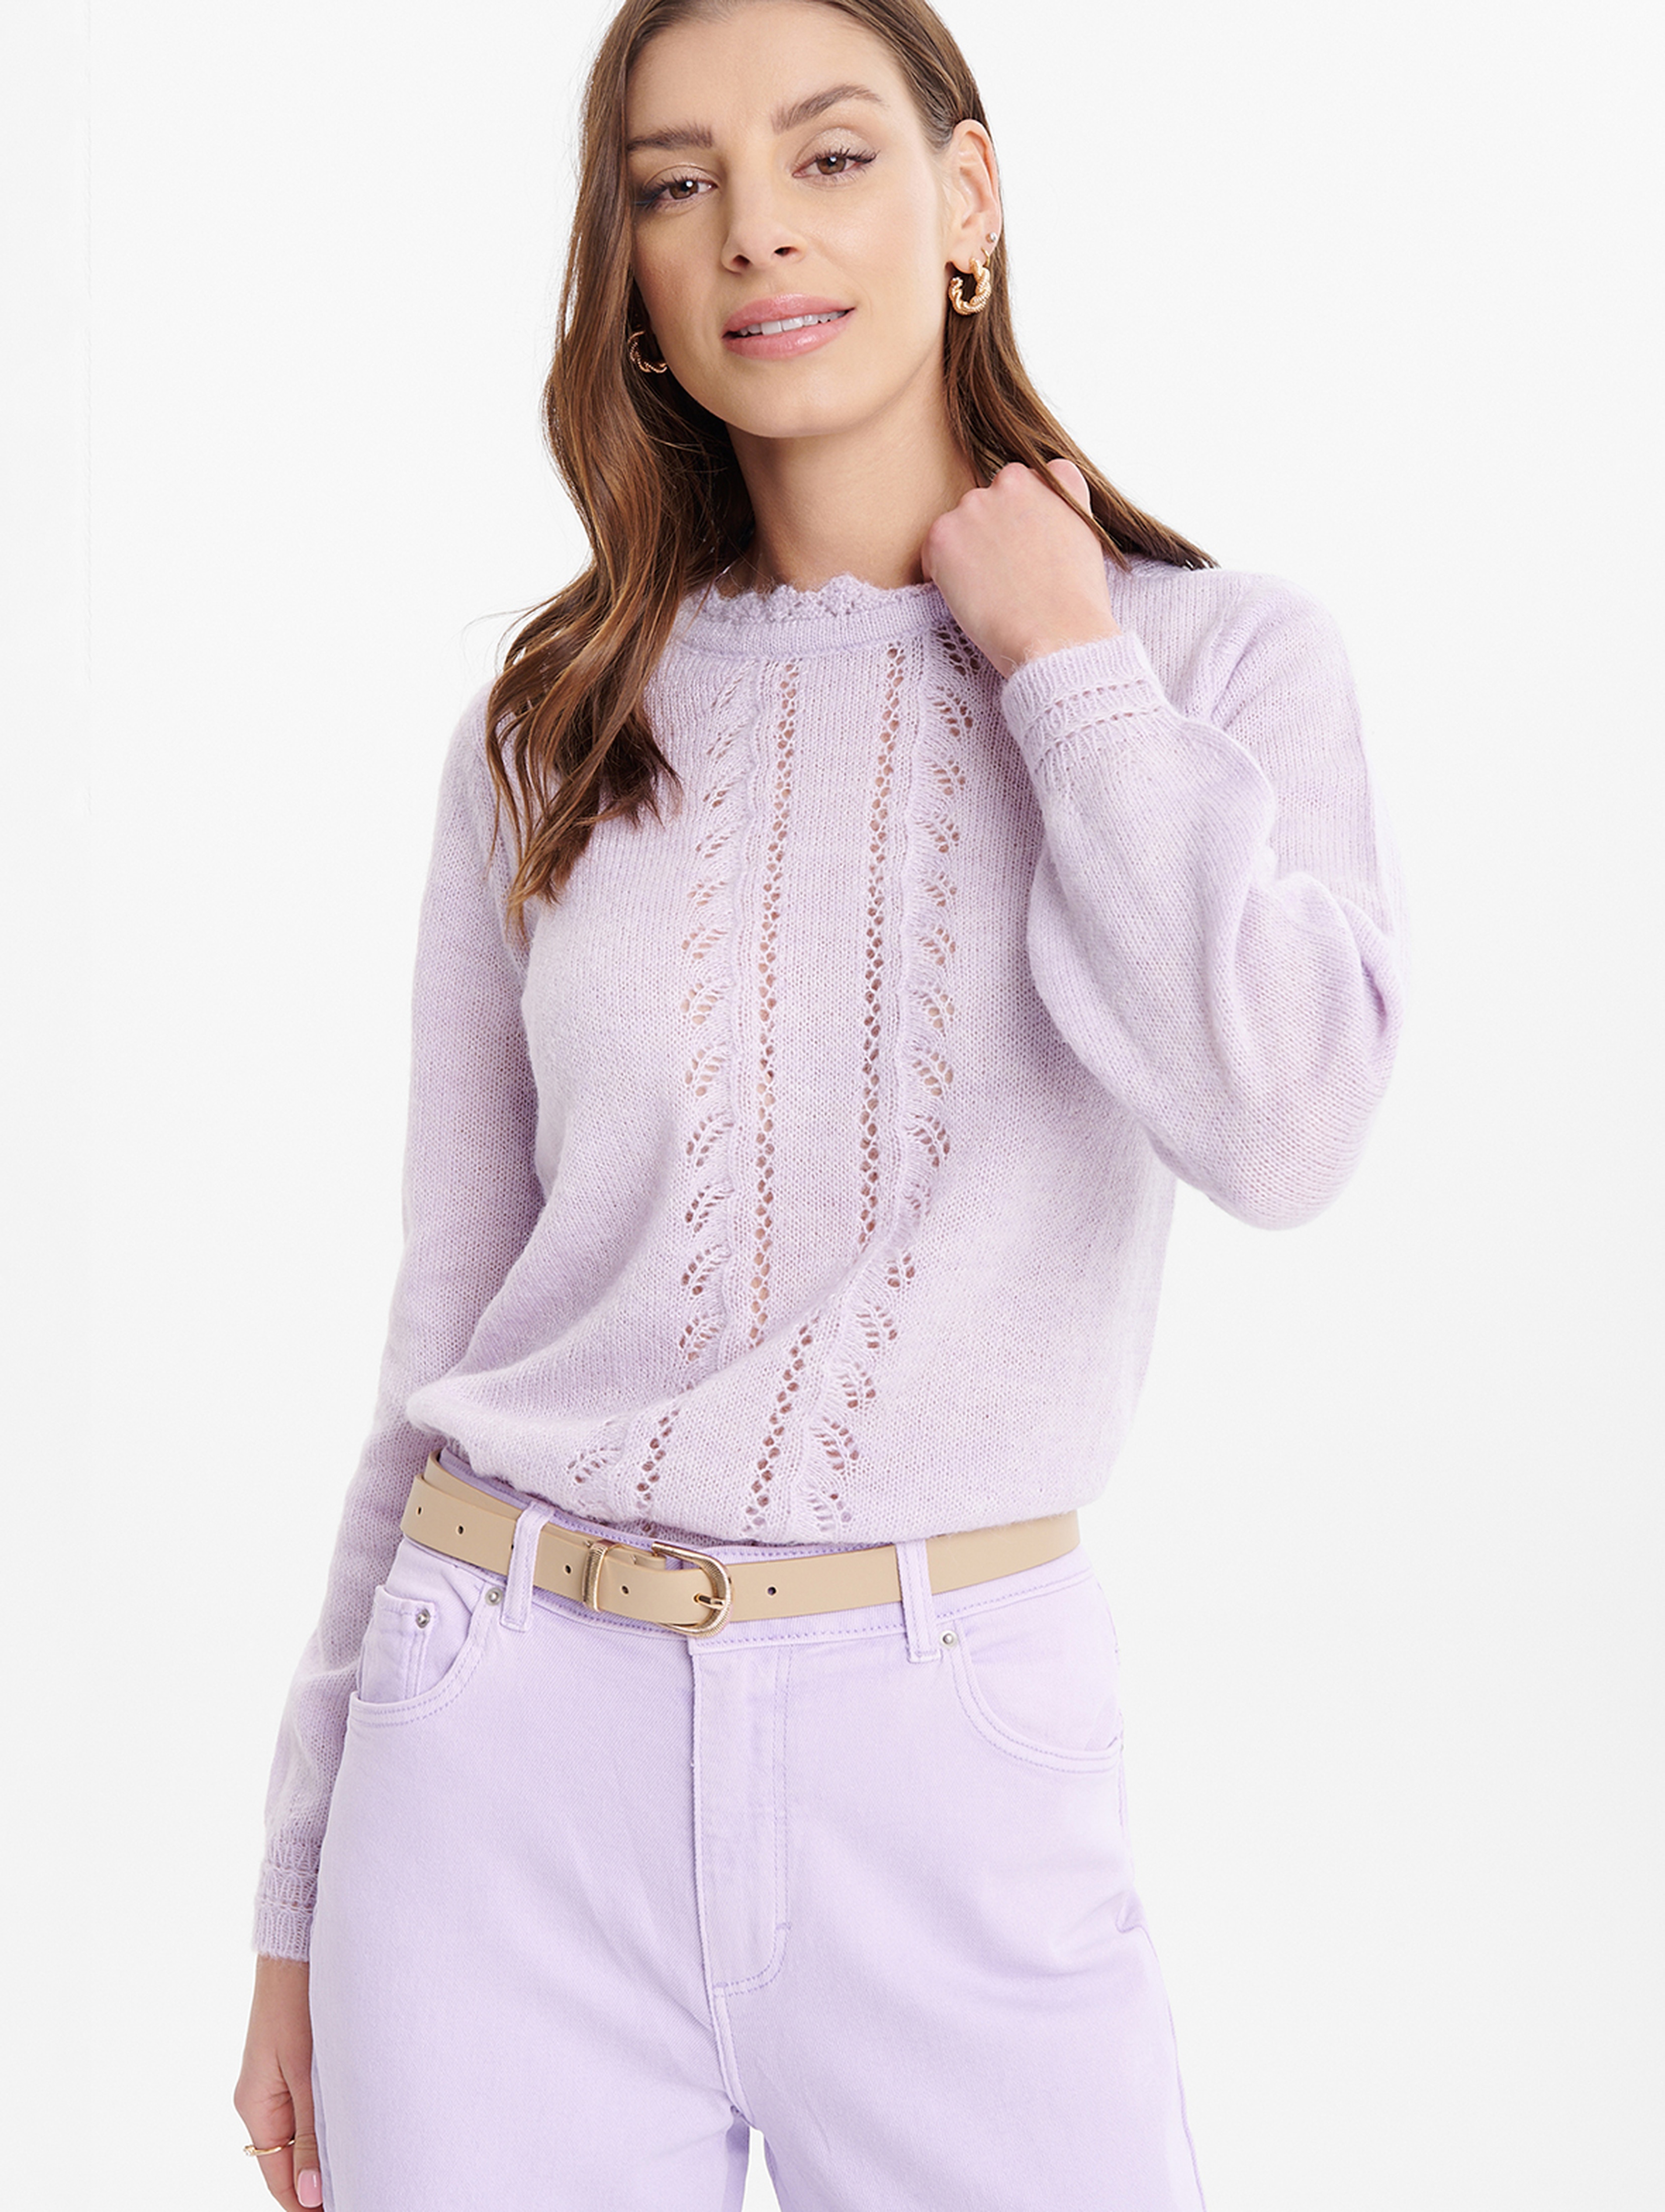 Ażurowy sweter damski fioletowy